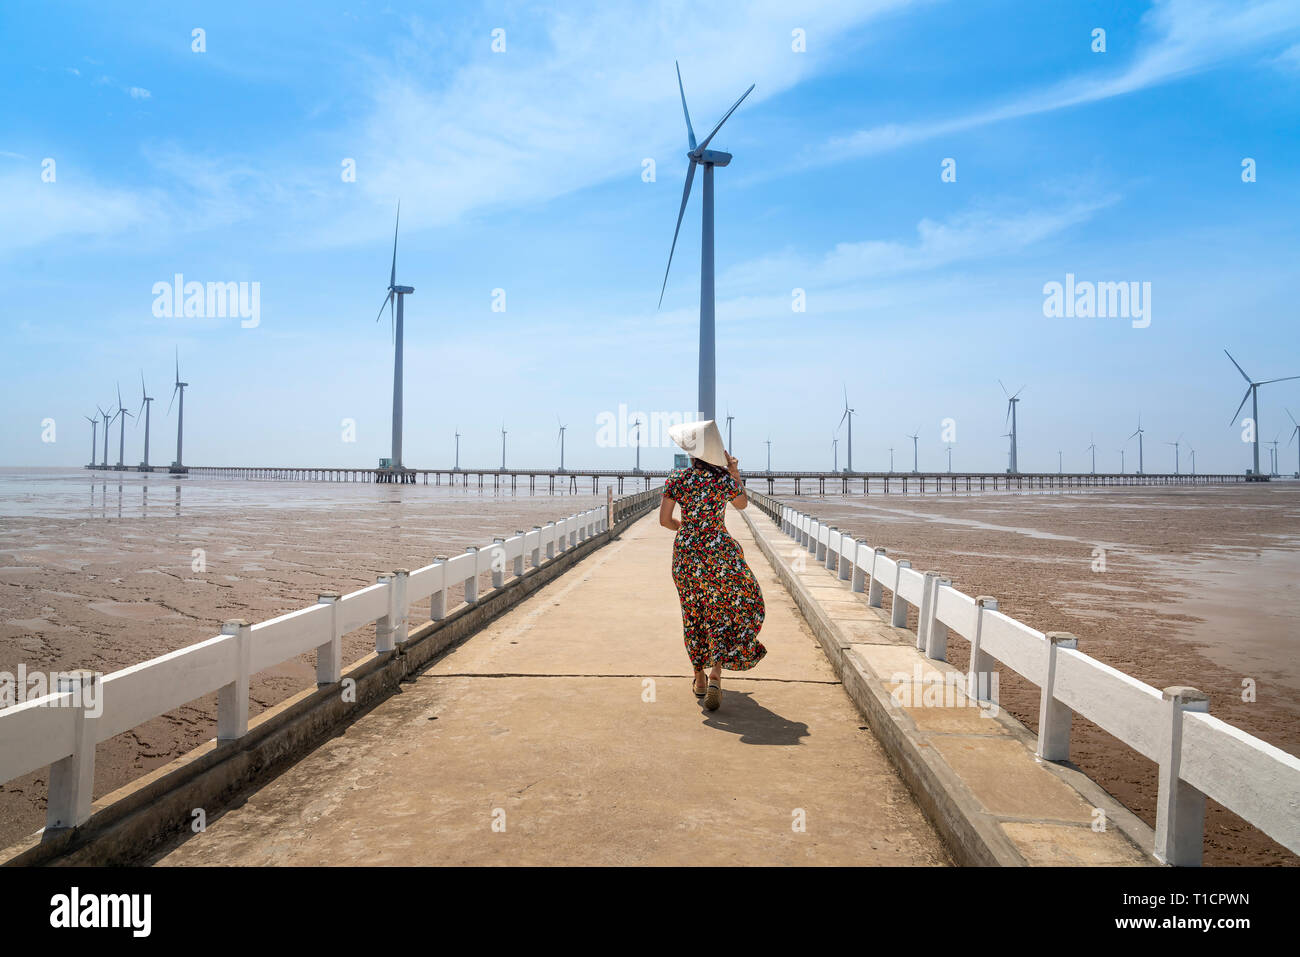 Las turbinas eólicas generadoras de electricidad en el mar en Bac Lieu, Vietnam - Enero 26, 2019: Seascape con turbina de electricidad verde, el molino de viento para Foto de stock